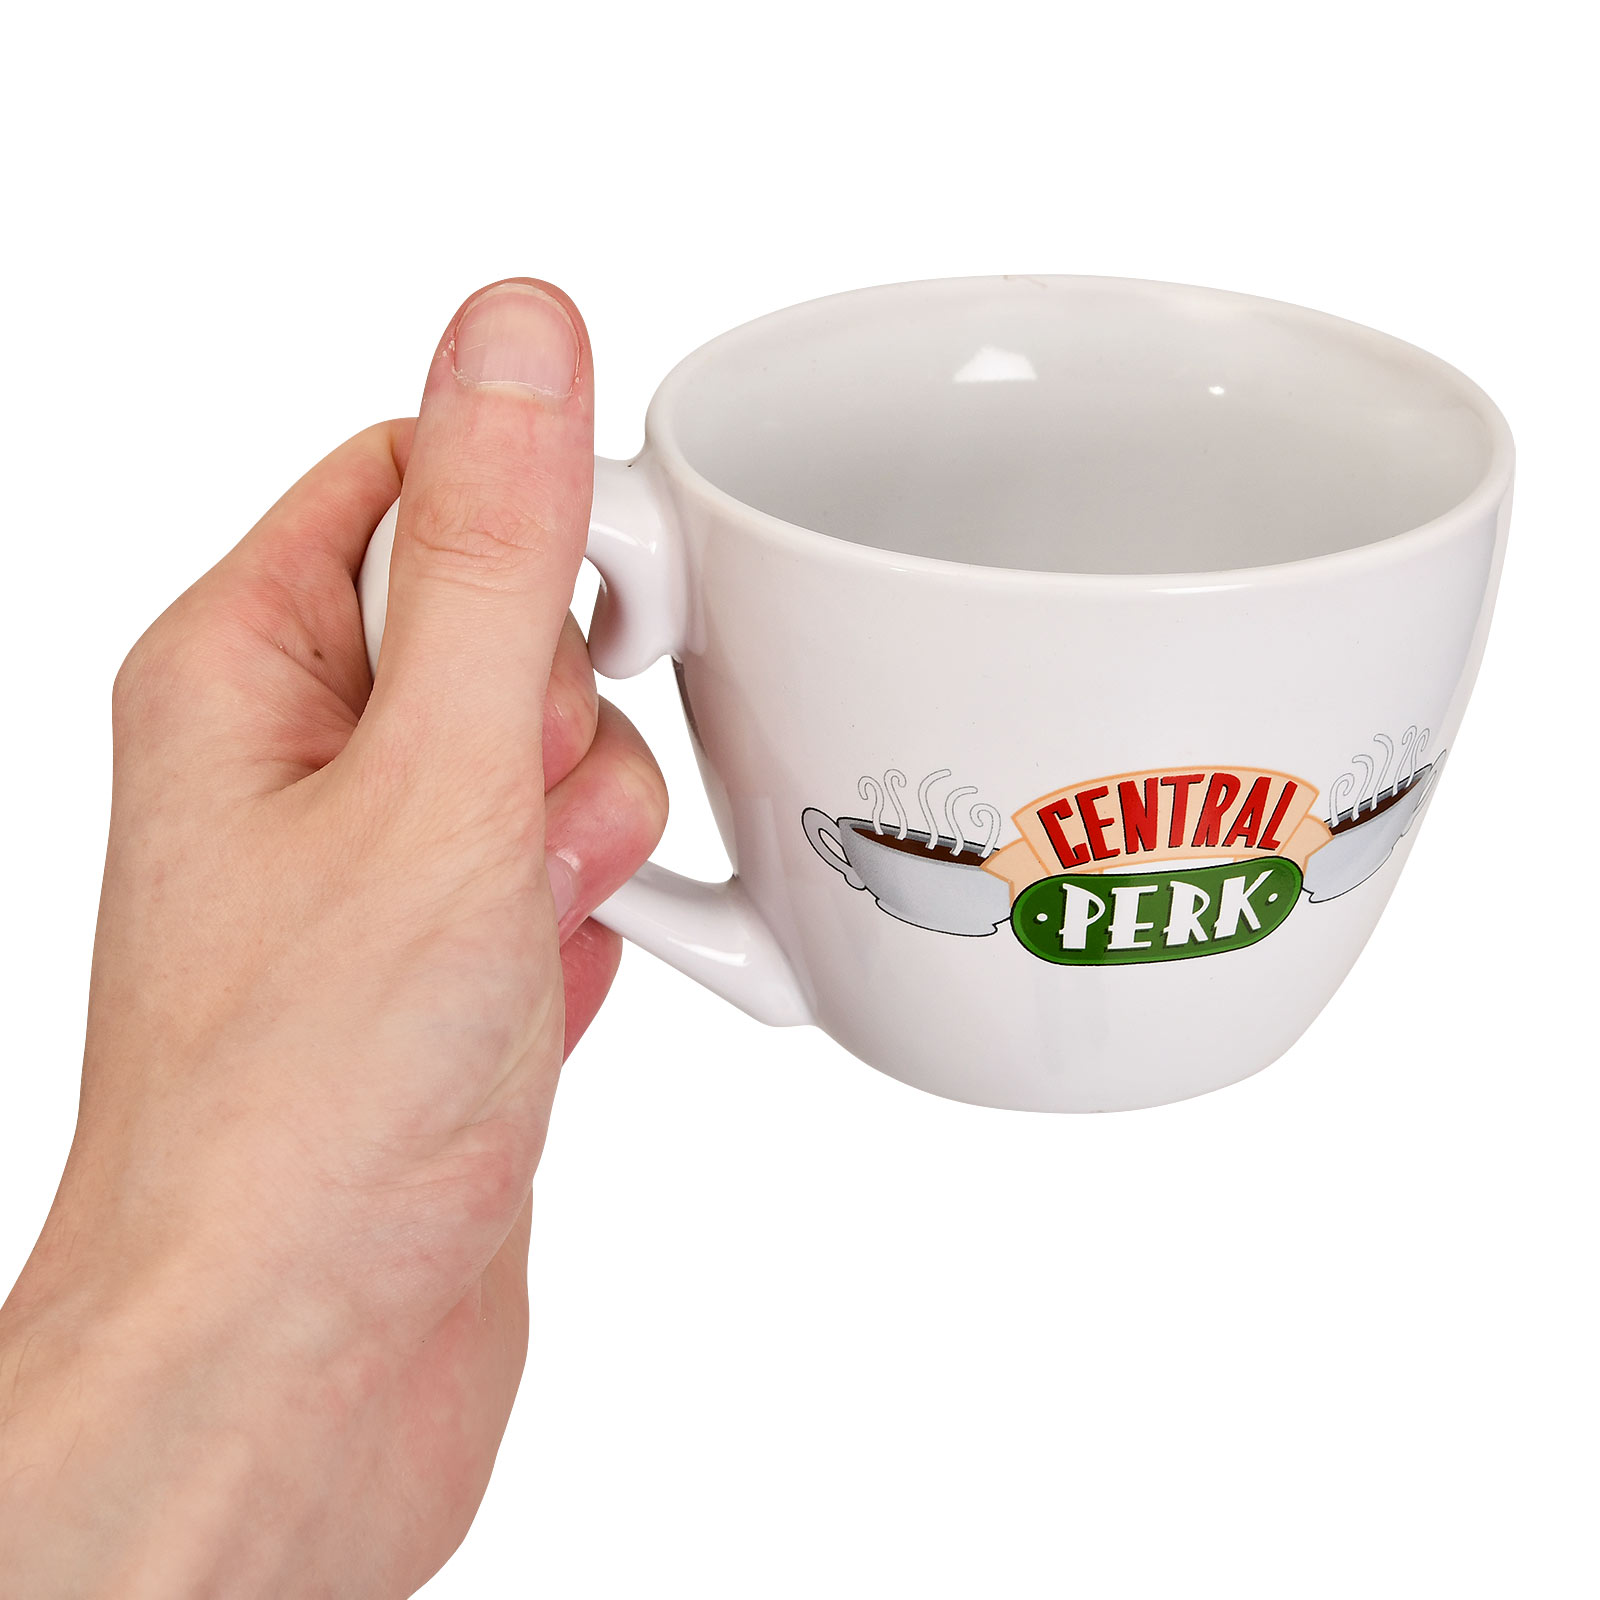 Friends - Central Perk Mug